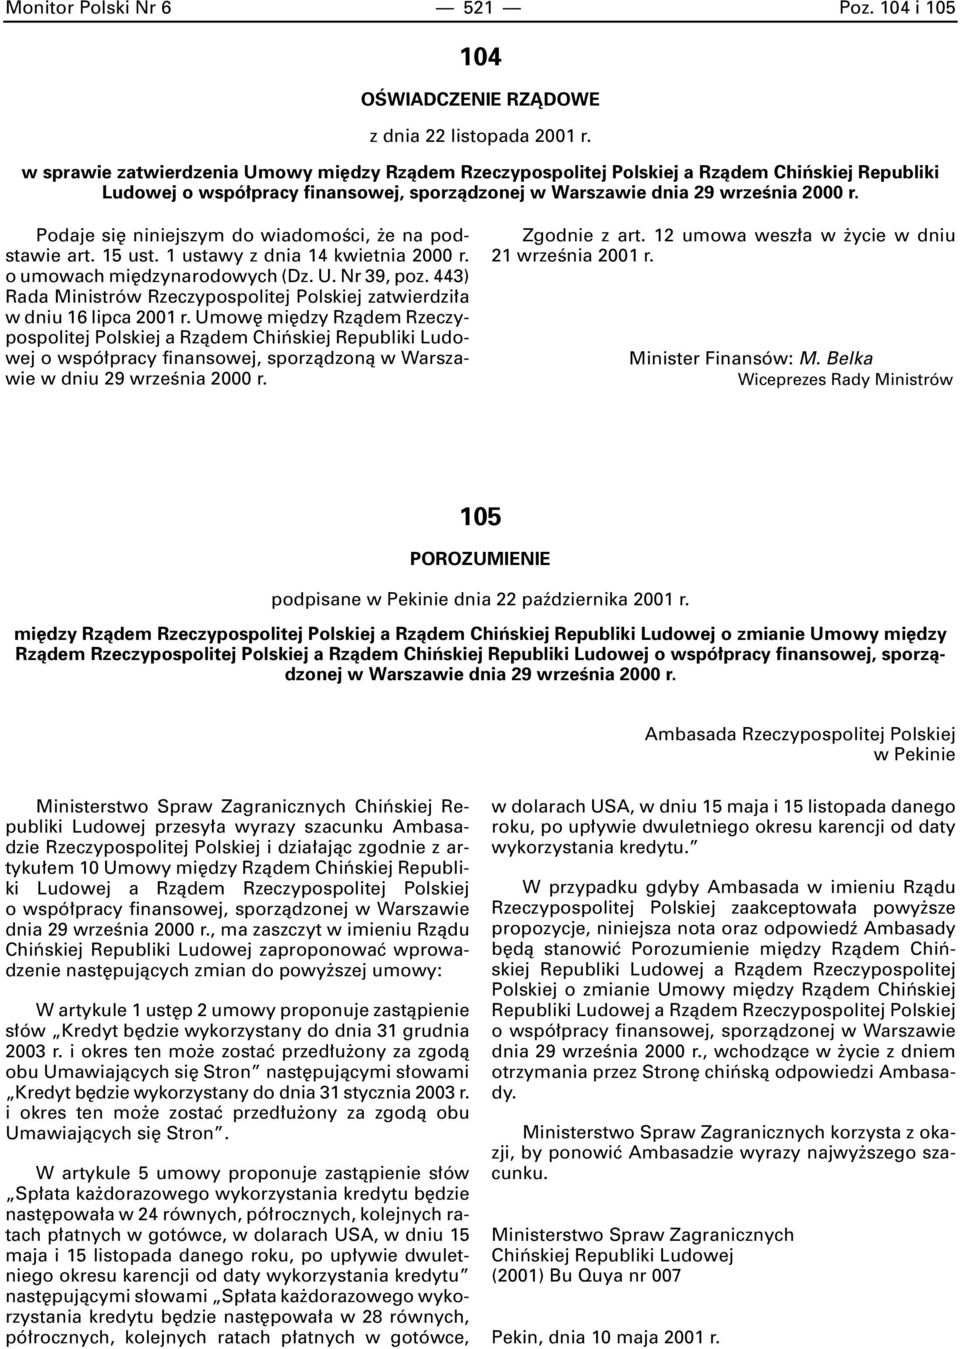 1 ustawy z dnia 14 kwietnia 2000 r. o umowach mi dzynarodowych (Dz. U. Nr 39, poz. 443) Rada Ministrów Rzeczypospolitej Polskiej zatwierdzi a w dniu 16 lipca 2001 r.